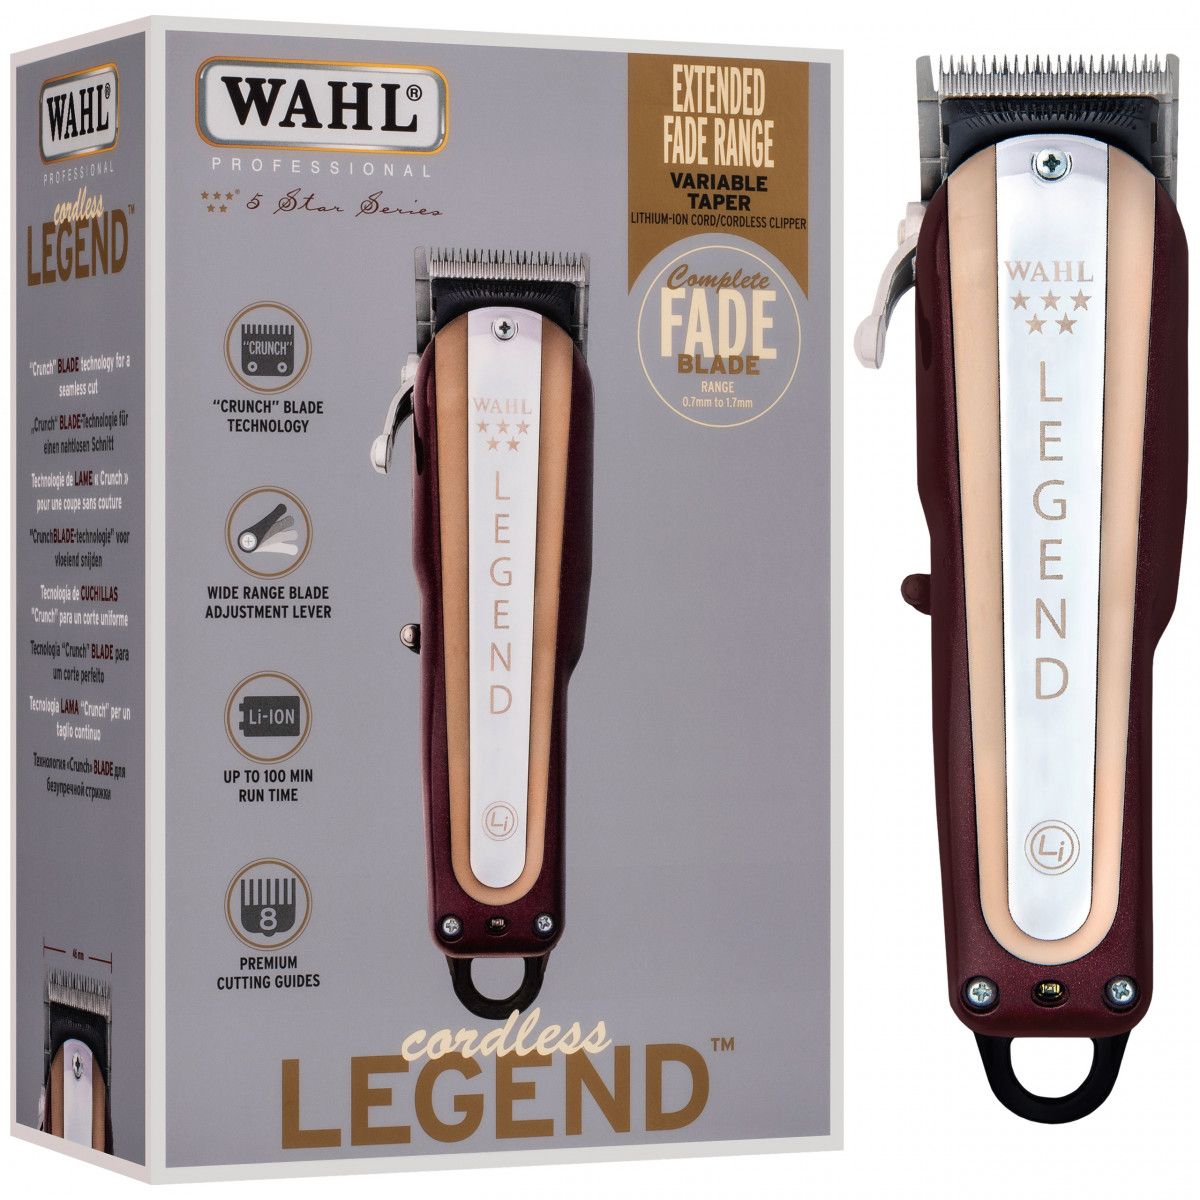 WAHL Pro Maszynka LEGEND CORDLESS – bezprzewodowa maszynka do włosów z chromowanym ostrzem